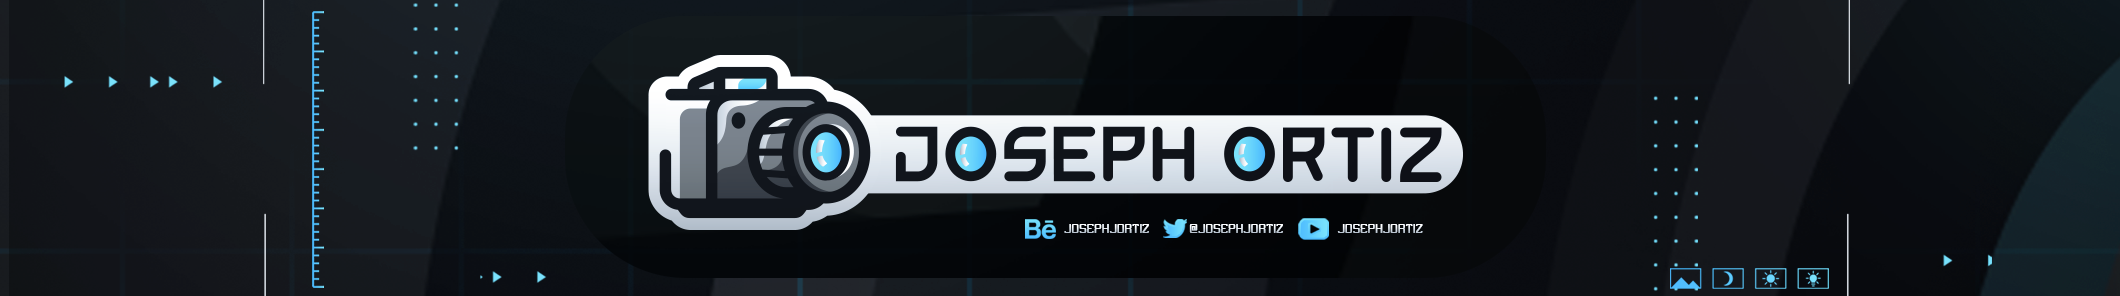 Baner profilu użytkownika Joseph Ortiz